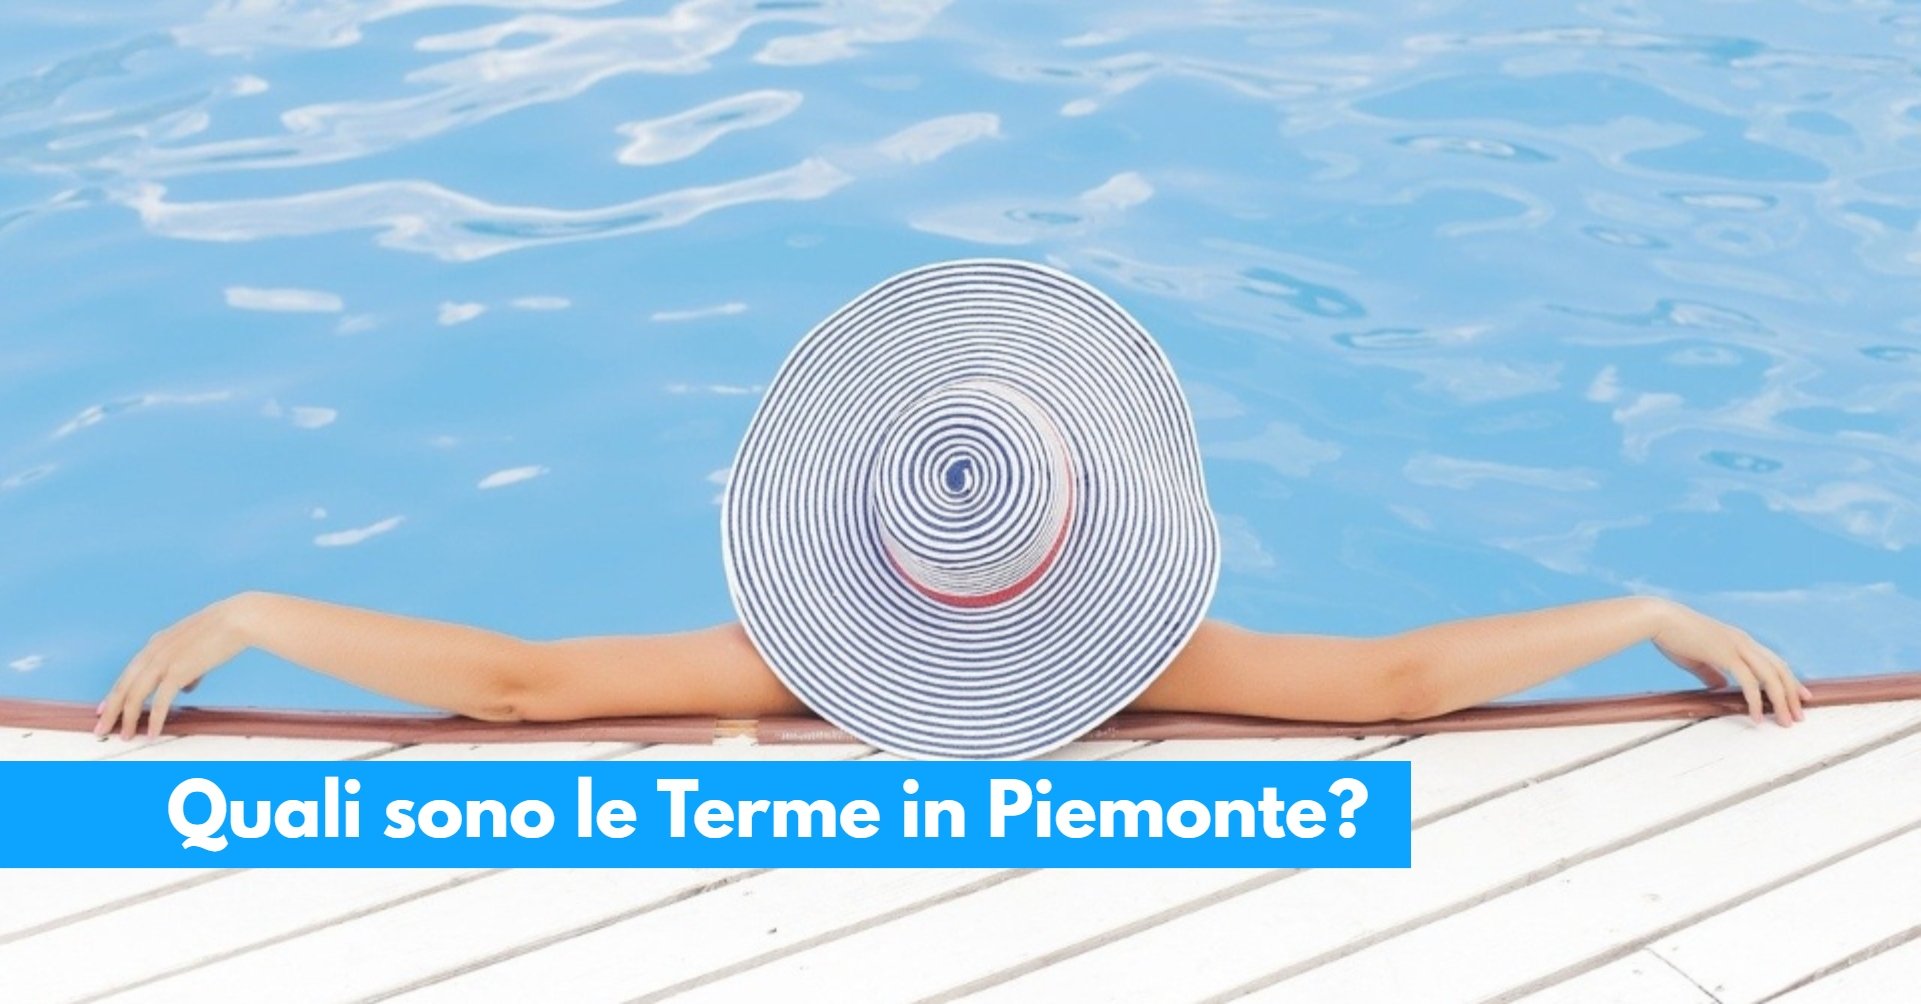 Quali sono le Terme in Piemonte_ Ecco l’elenco completo, costi e dettagli